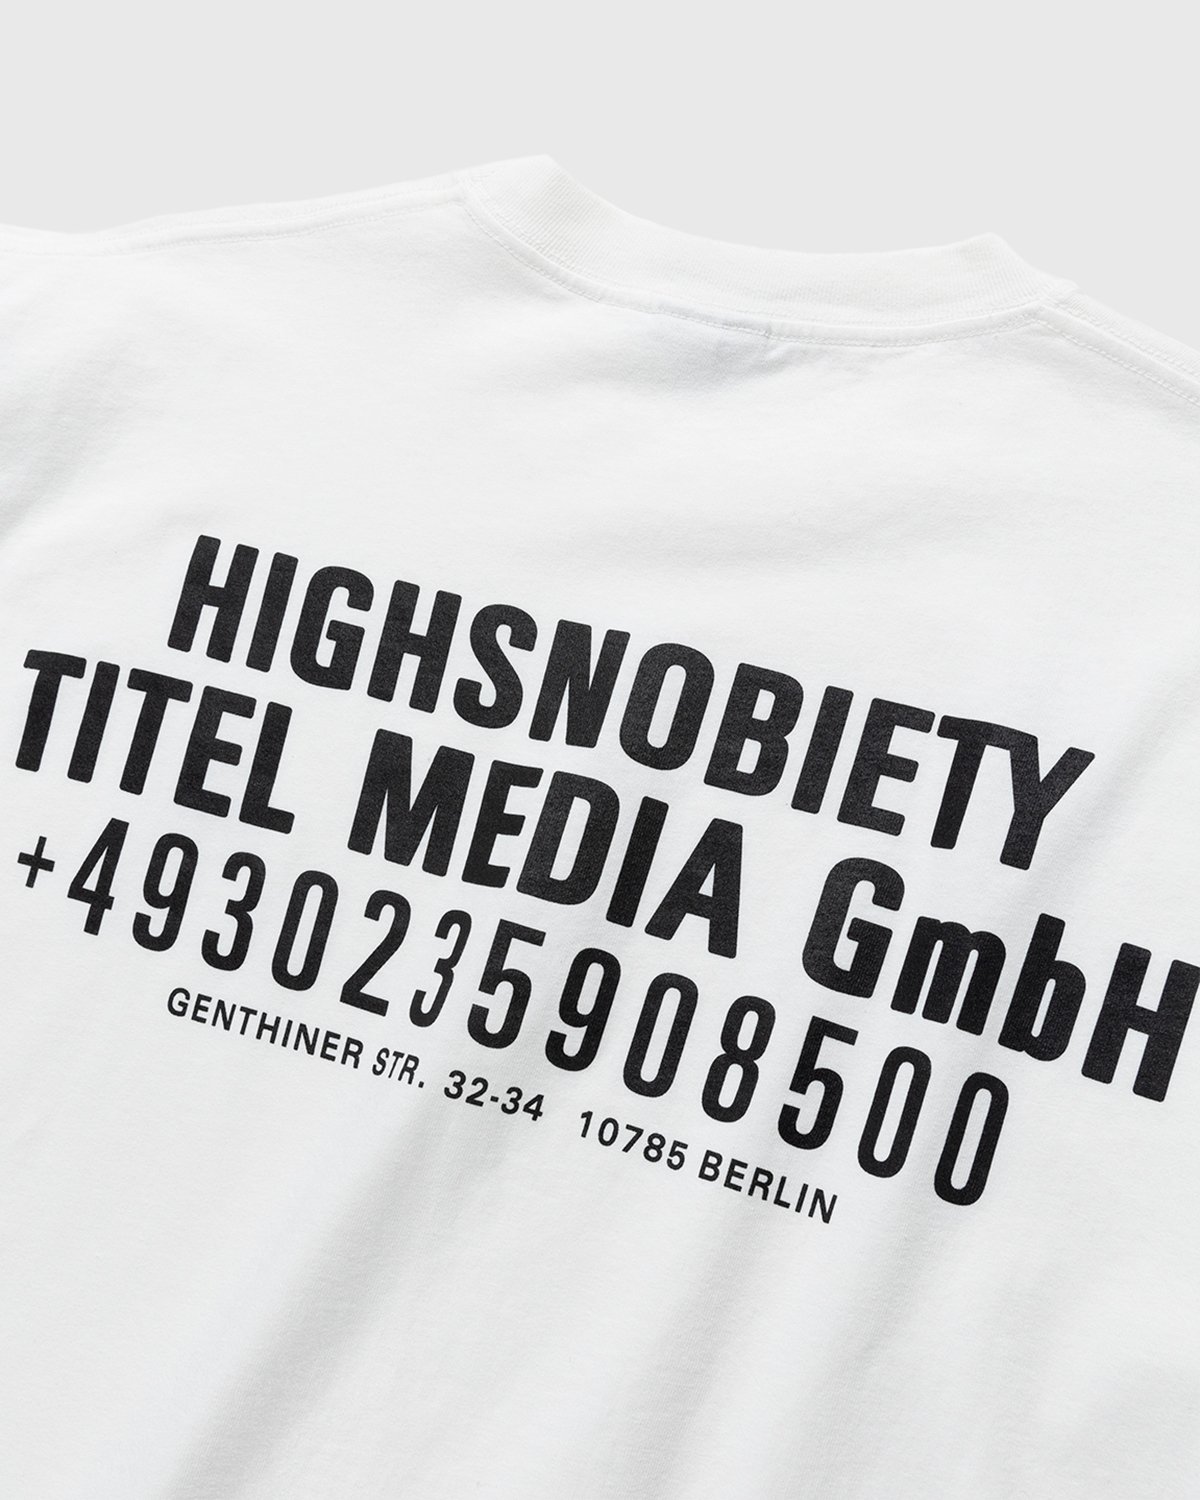 Highsnobiety - Titel Media GmbH T-Shirt White - Clothing - White - Image 3